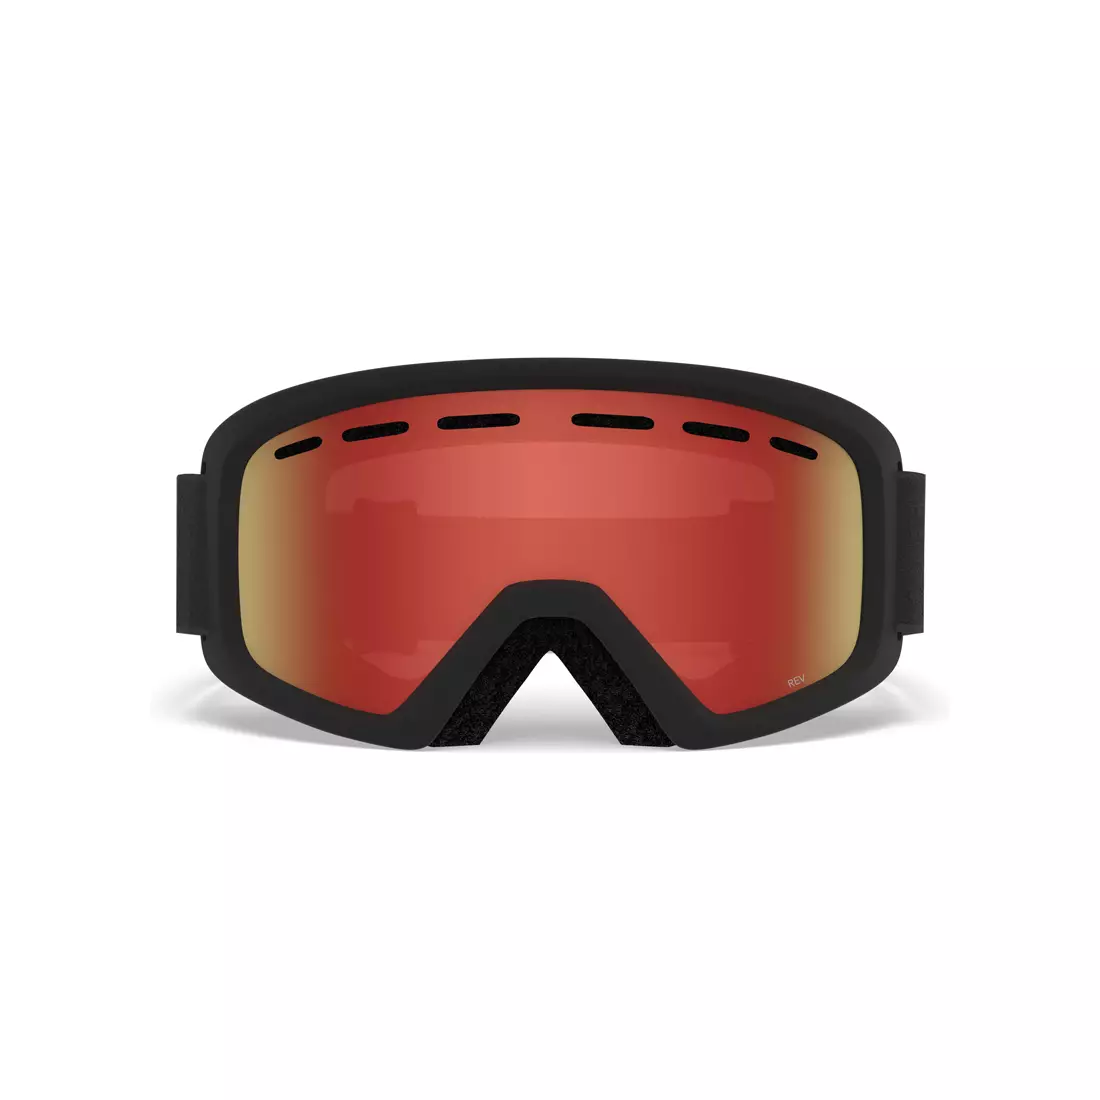 Junior ski / snowboard goggles REV BLACK ZOOM GR-7094685